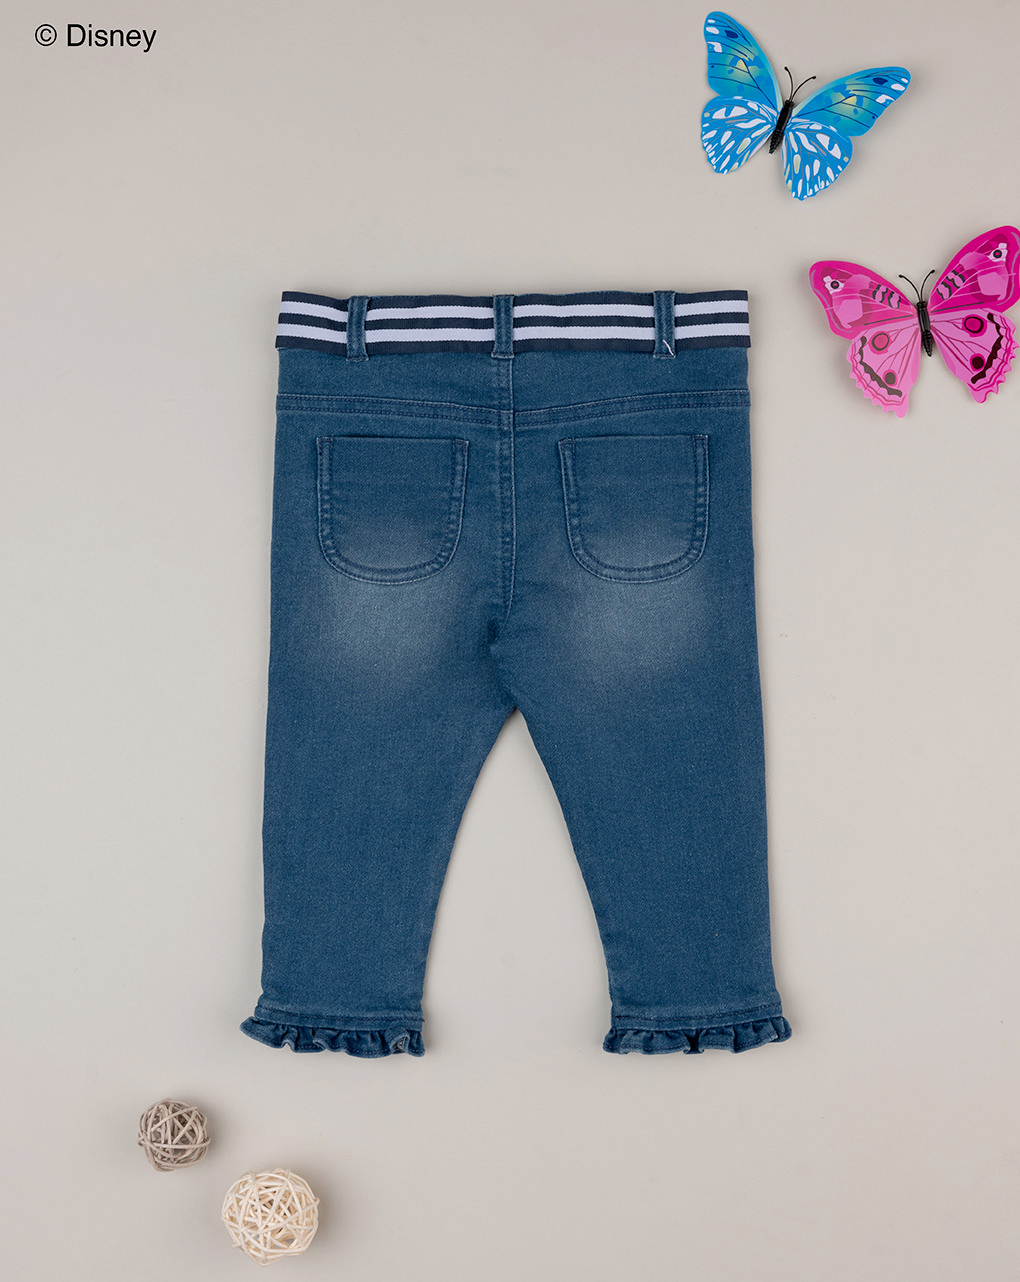 βρεφικό τζιν παντελόνι μπλε με τη minnie για κορίτσι - Prénatal